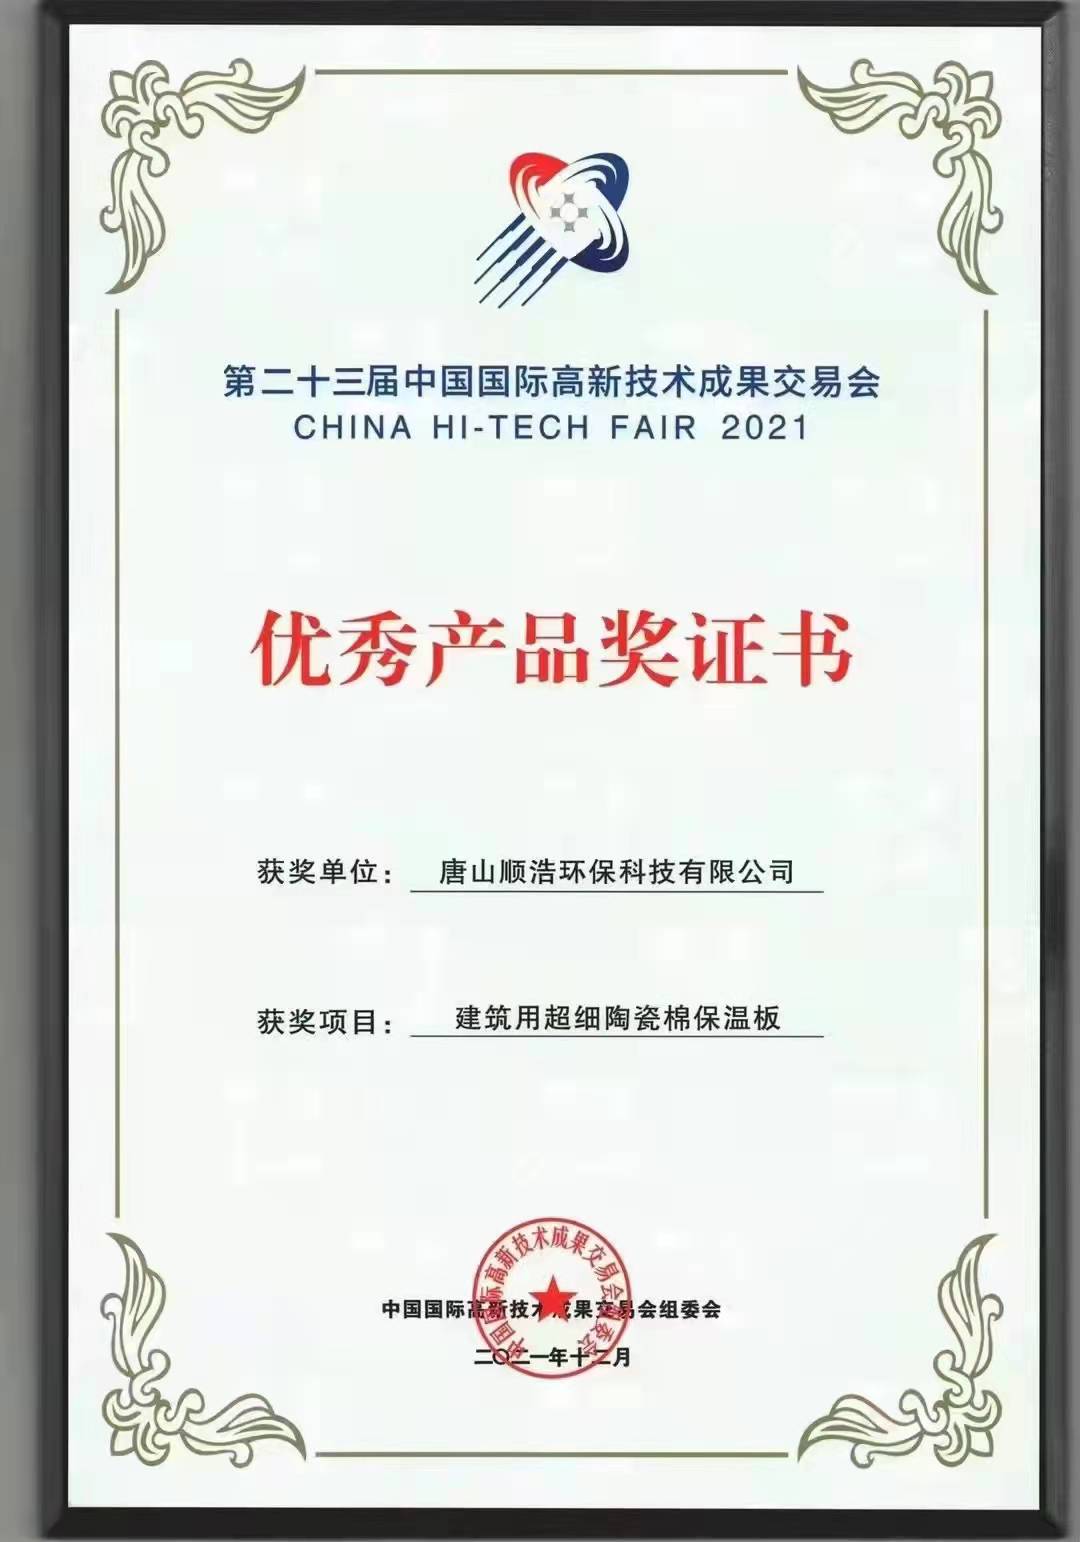 唐山顺浩环保科技有限公司荣获“优秀产品奖证书”